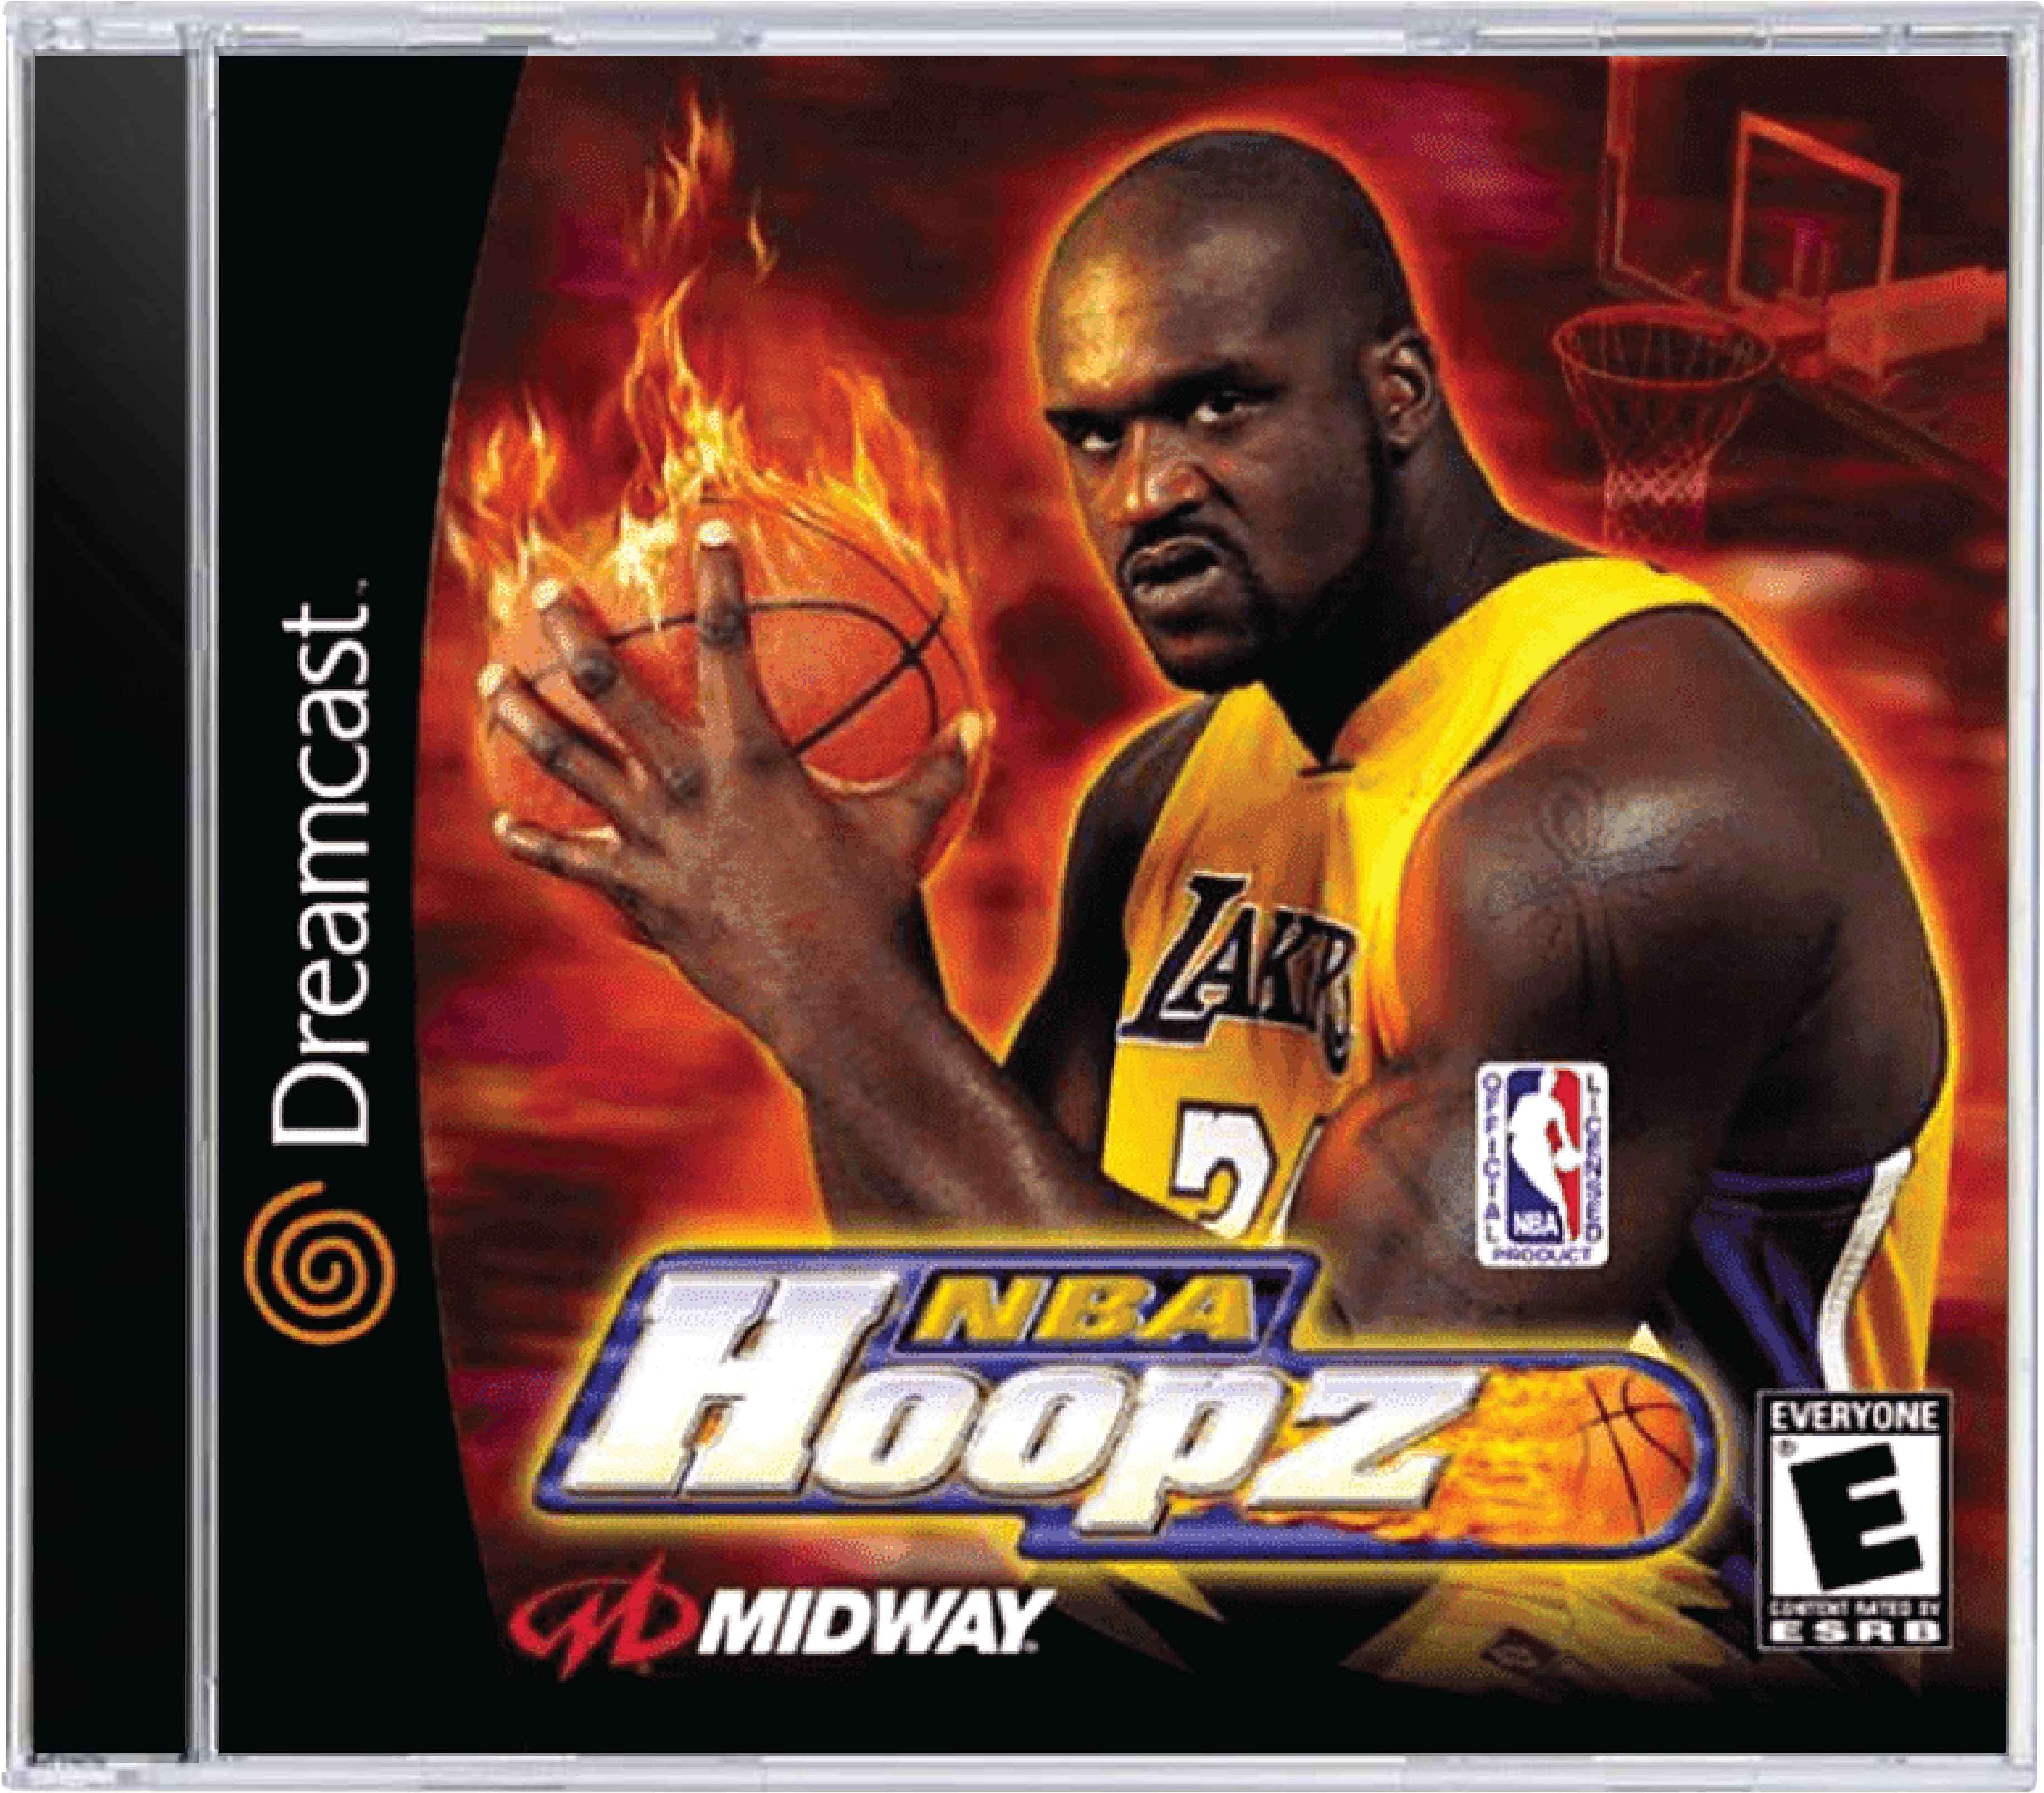 NBA Hoopz Cover Art